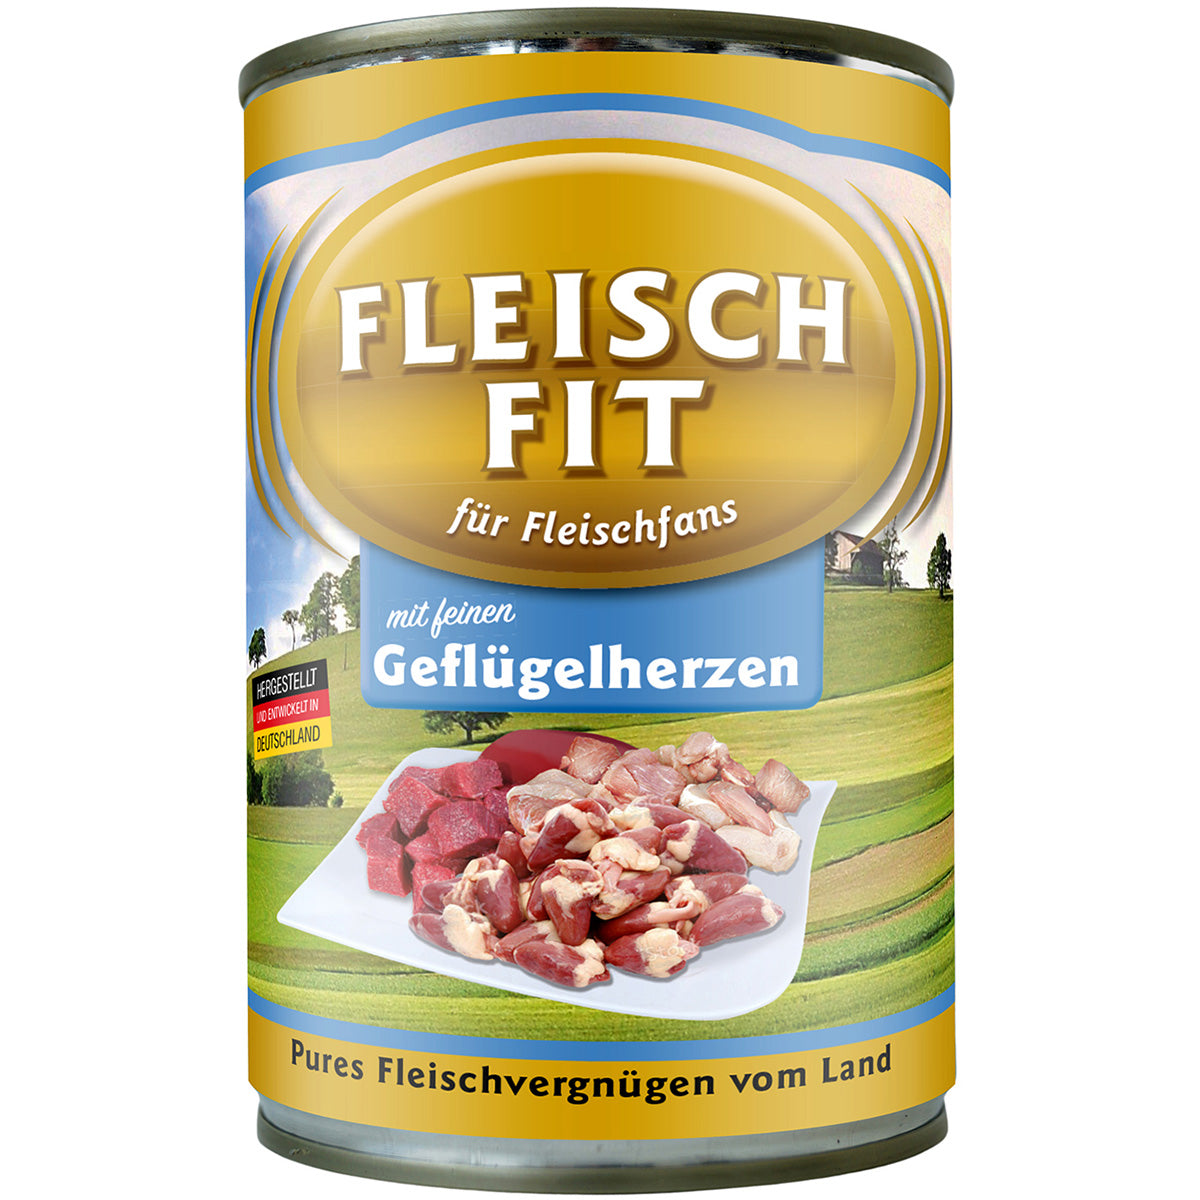 FleischFit mit Geflügelherzen, 400 g